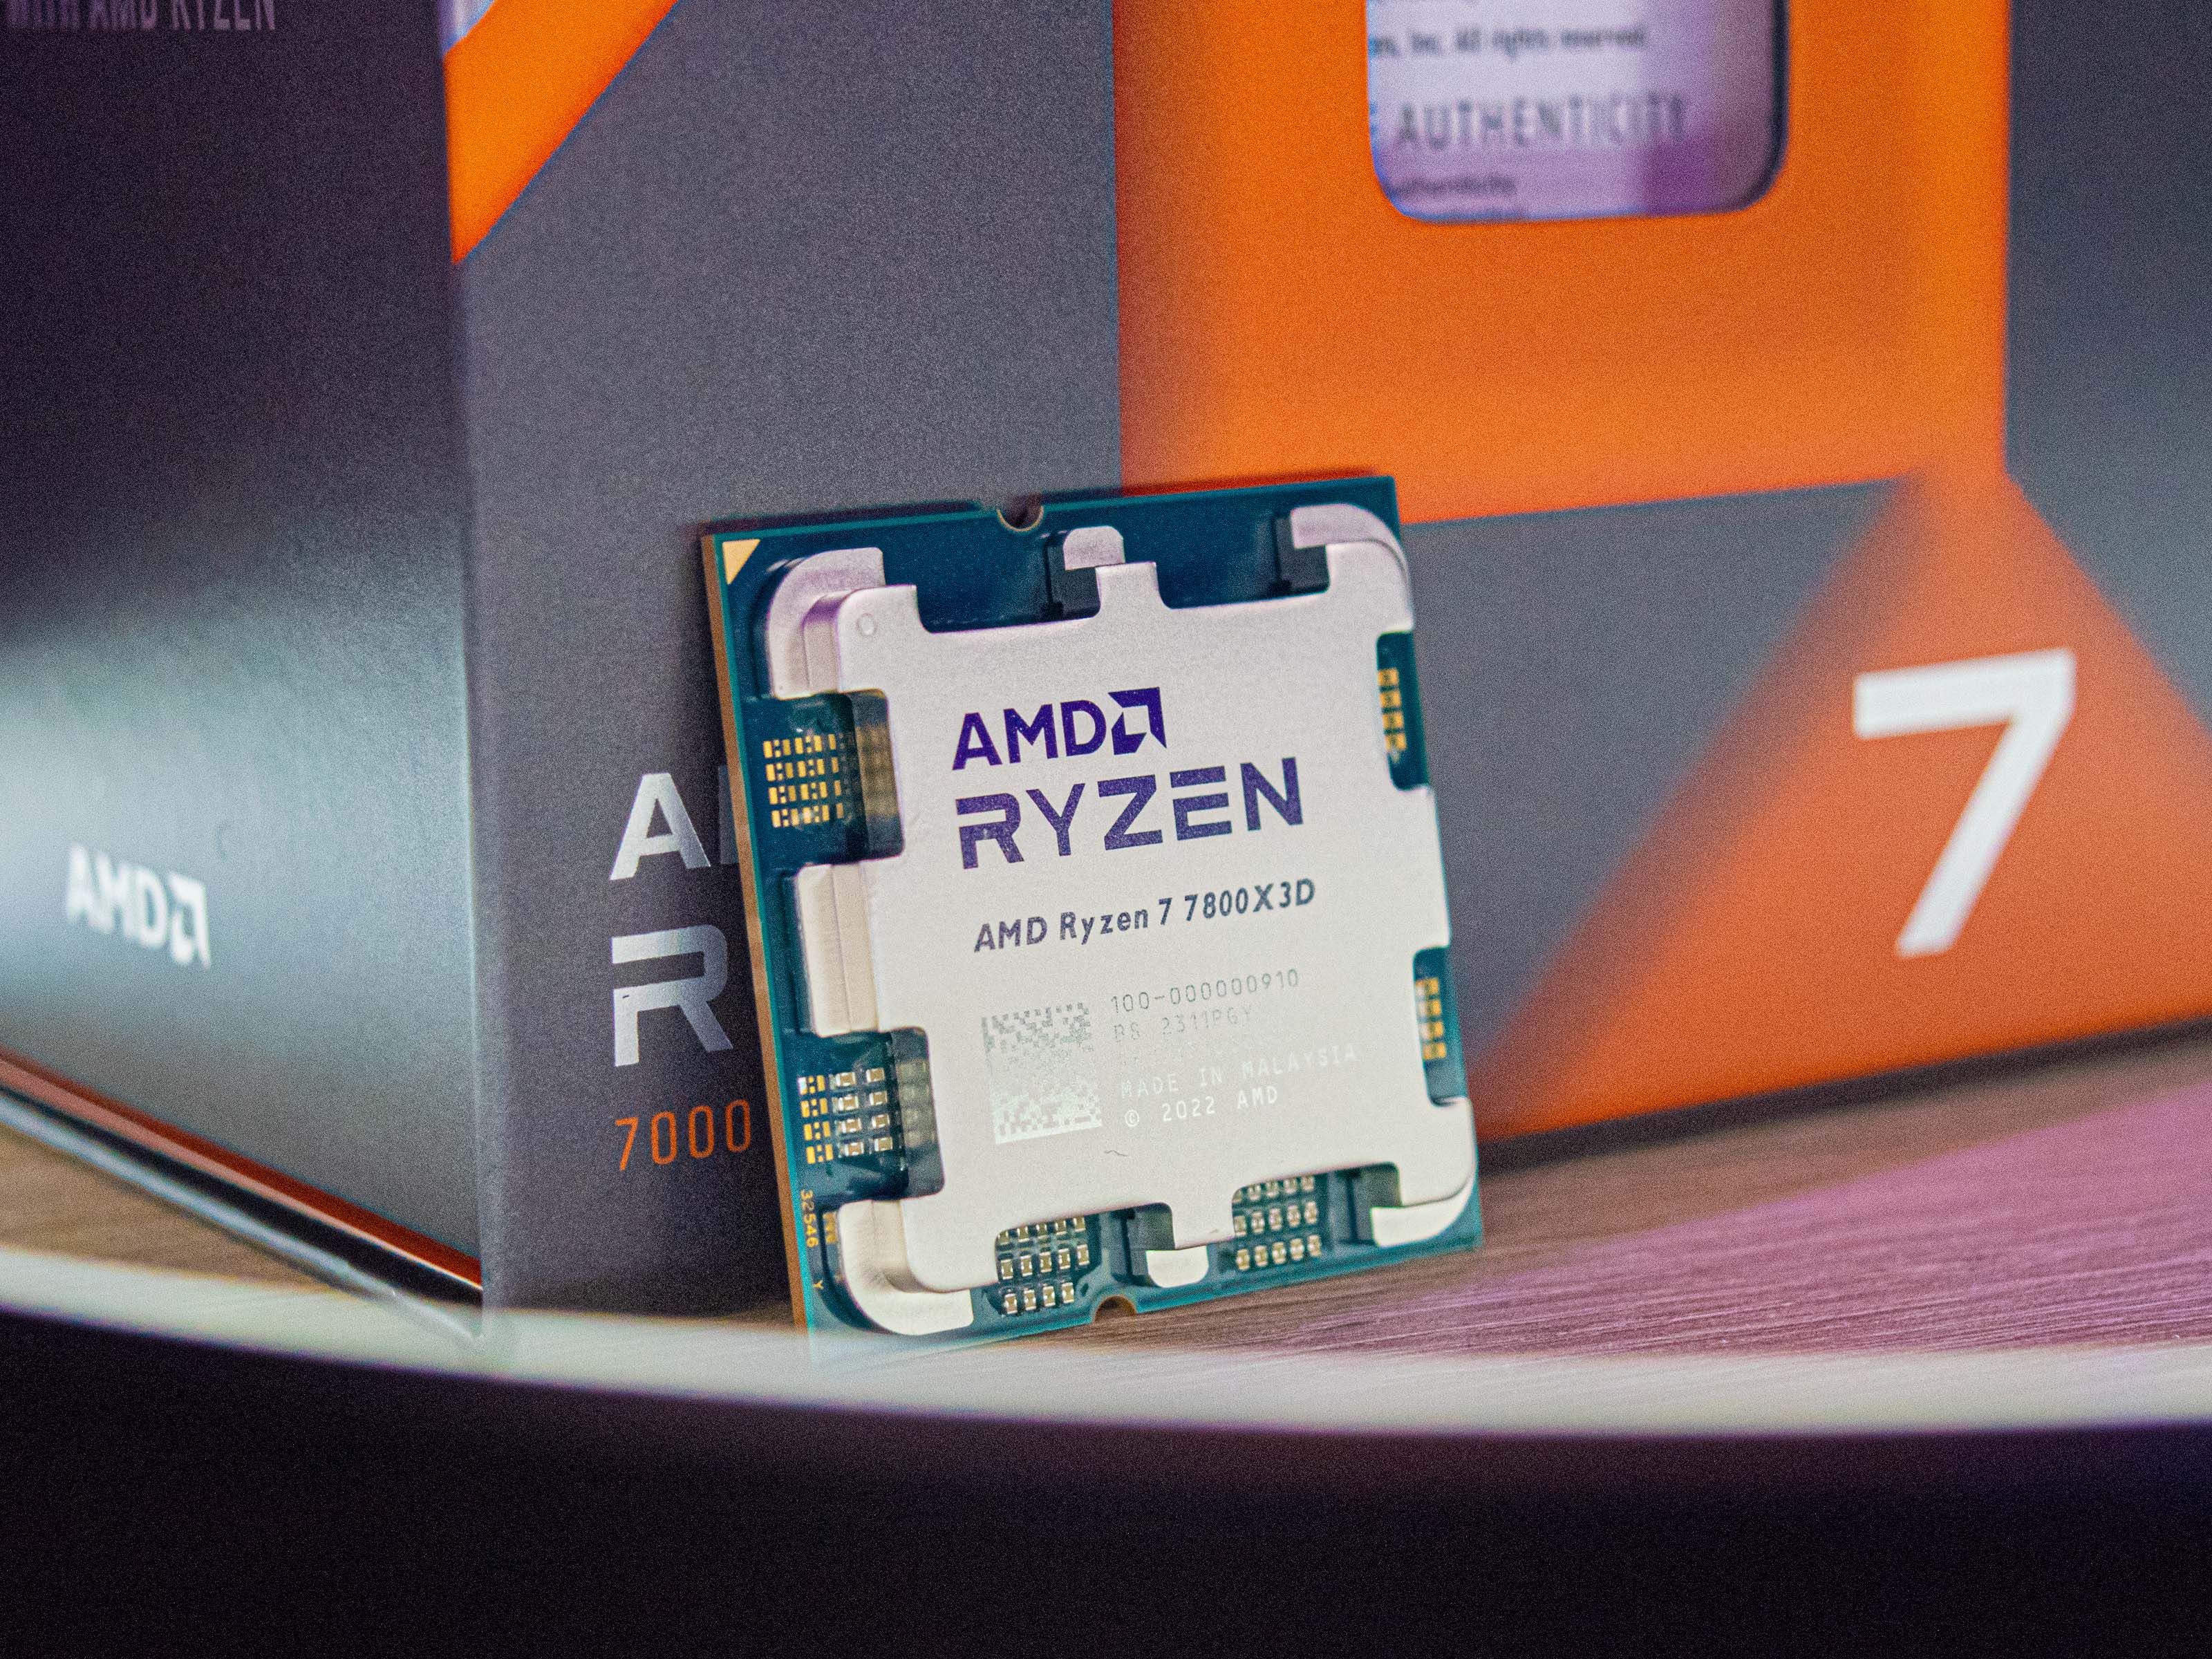 AMD Ryzen 7 7800X3D desktop CPU review: Faster than a Core i9 